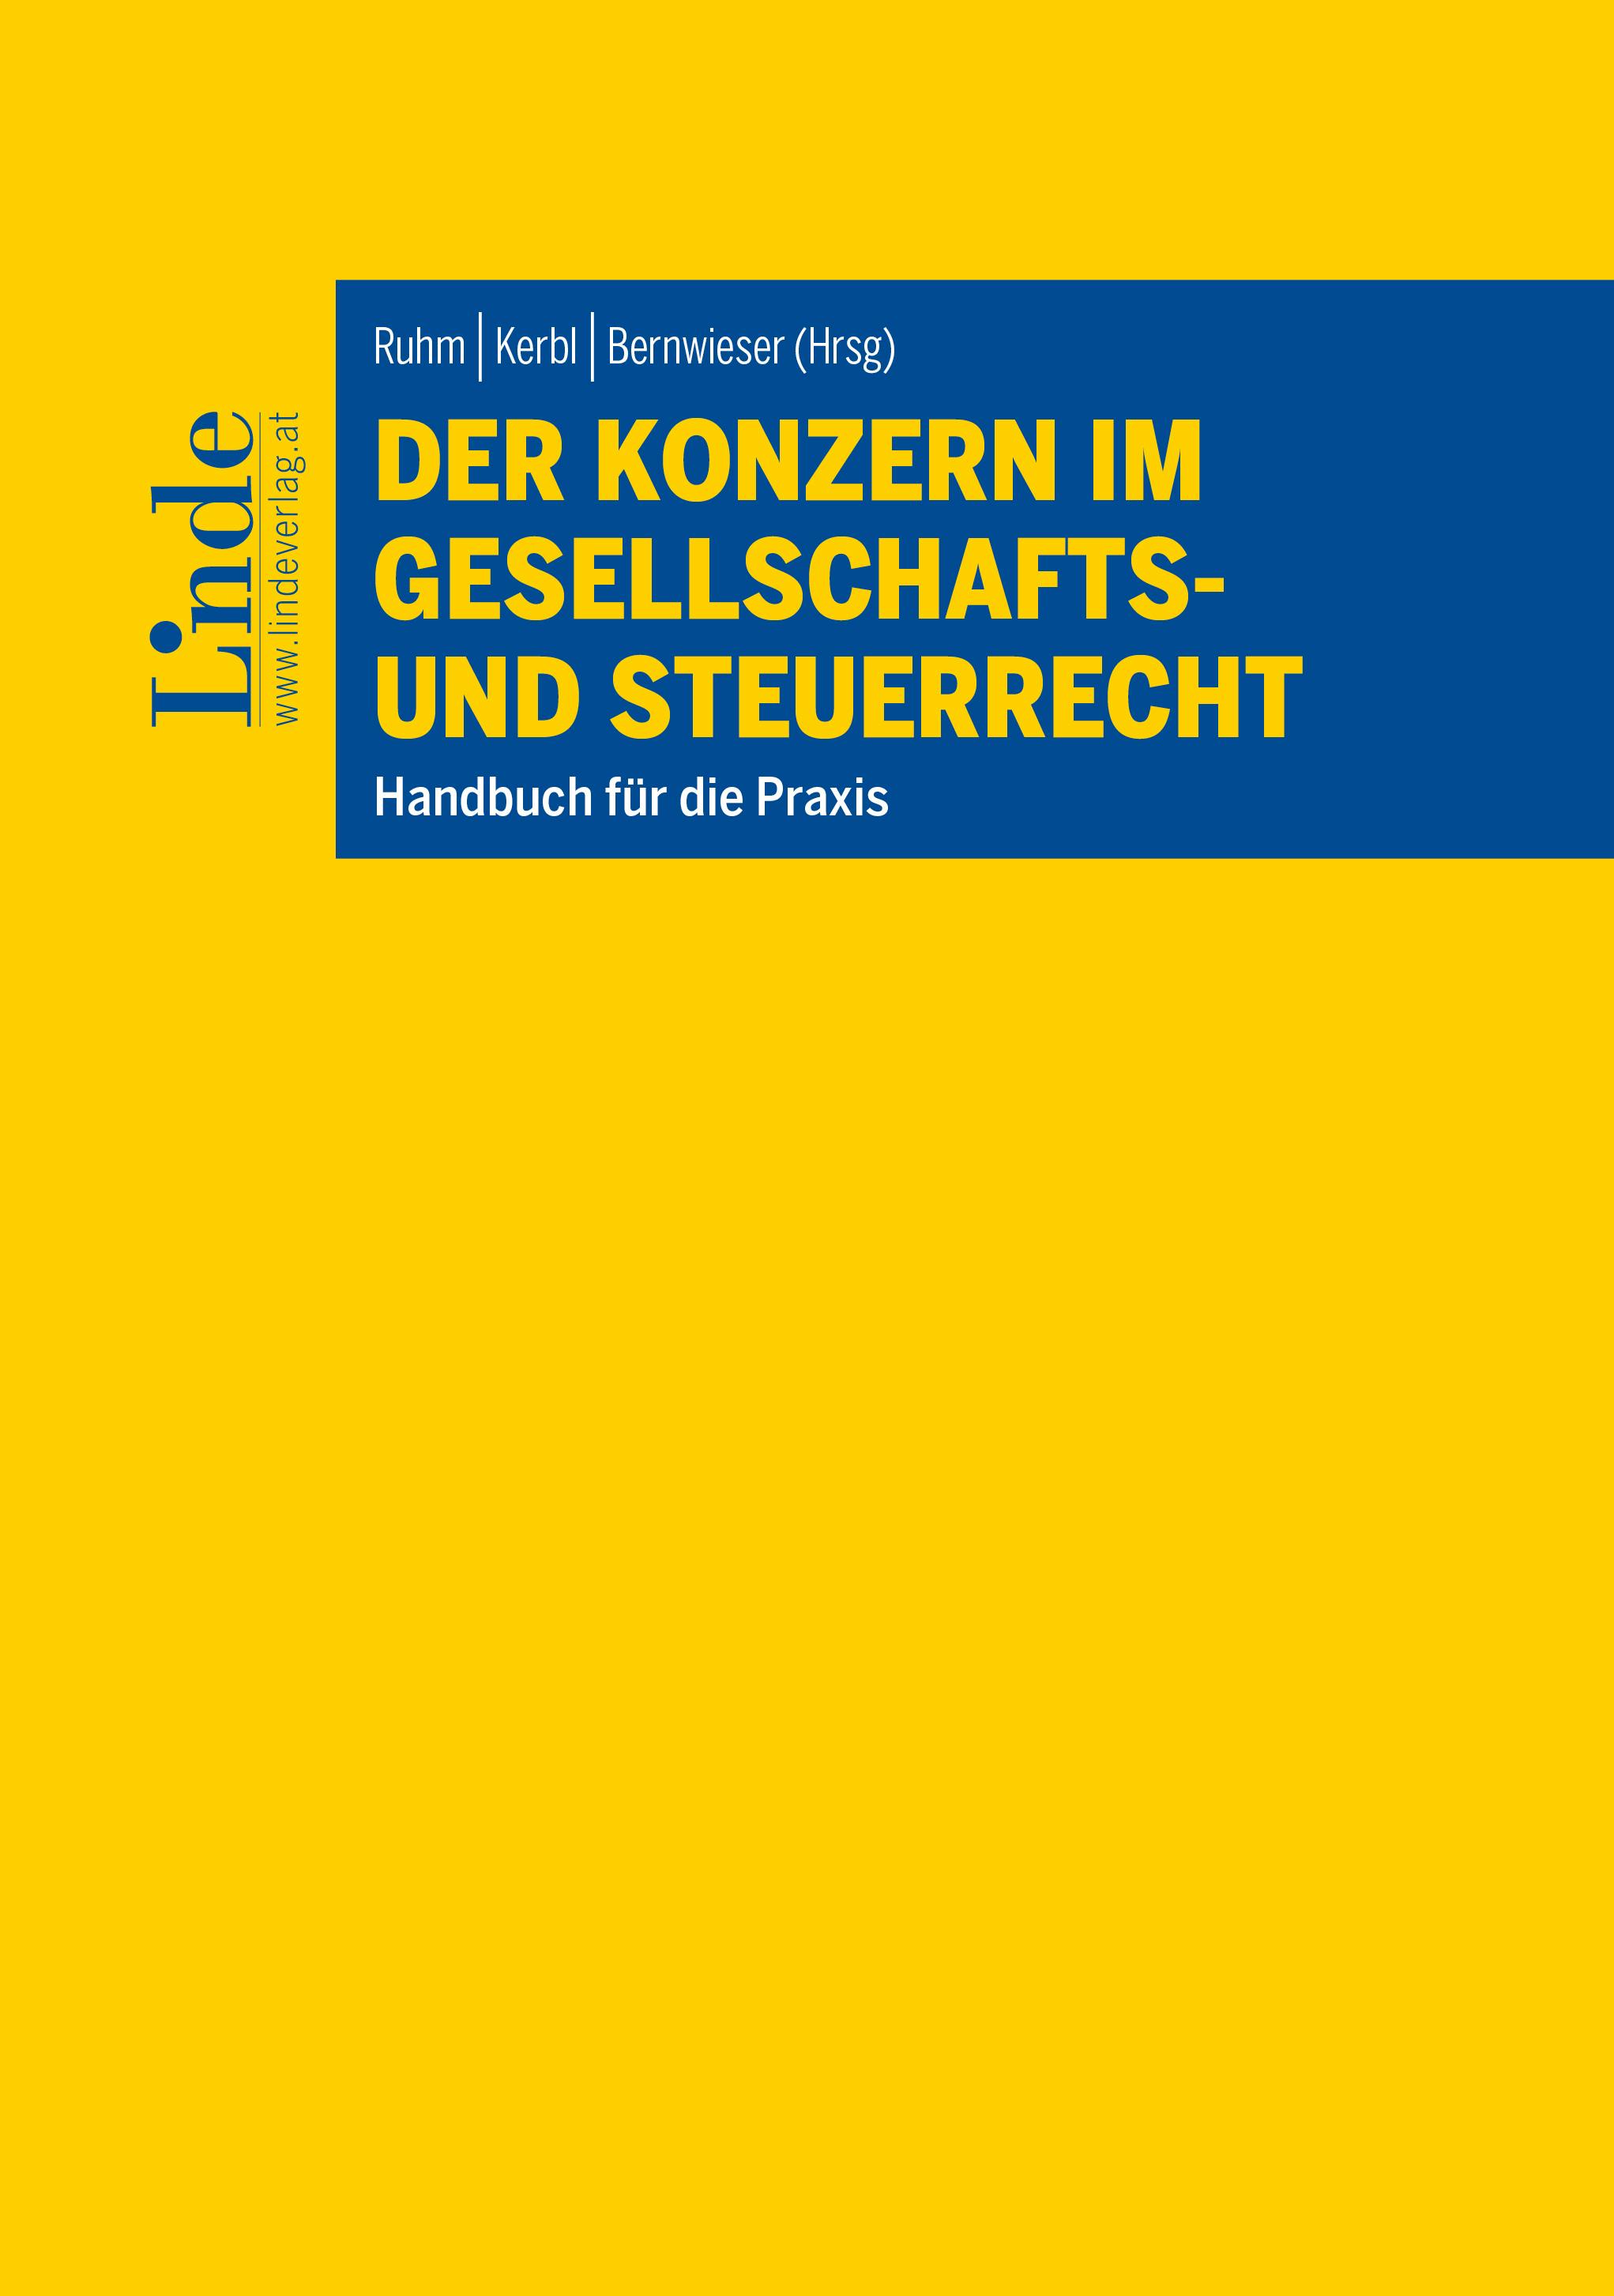 Ruhm | Kerbl | Bernwieser (Hrsg.)
Der Konzern im Gesellschafts- und Steuerrecht inkl. Ergänzungsband 2023
Handbuch für die Praxis